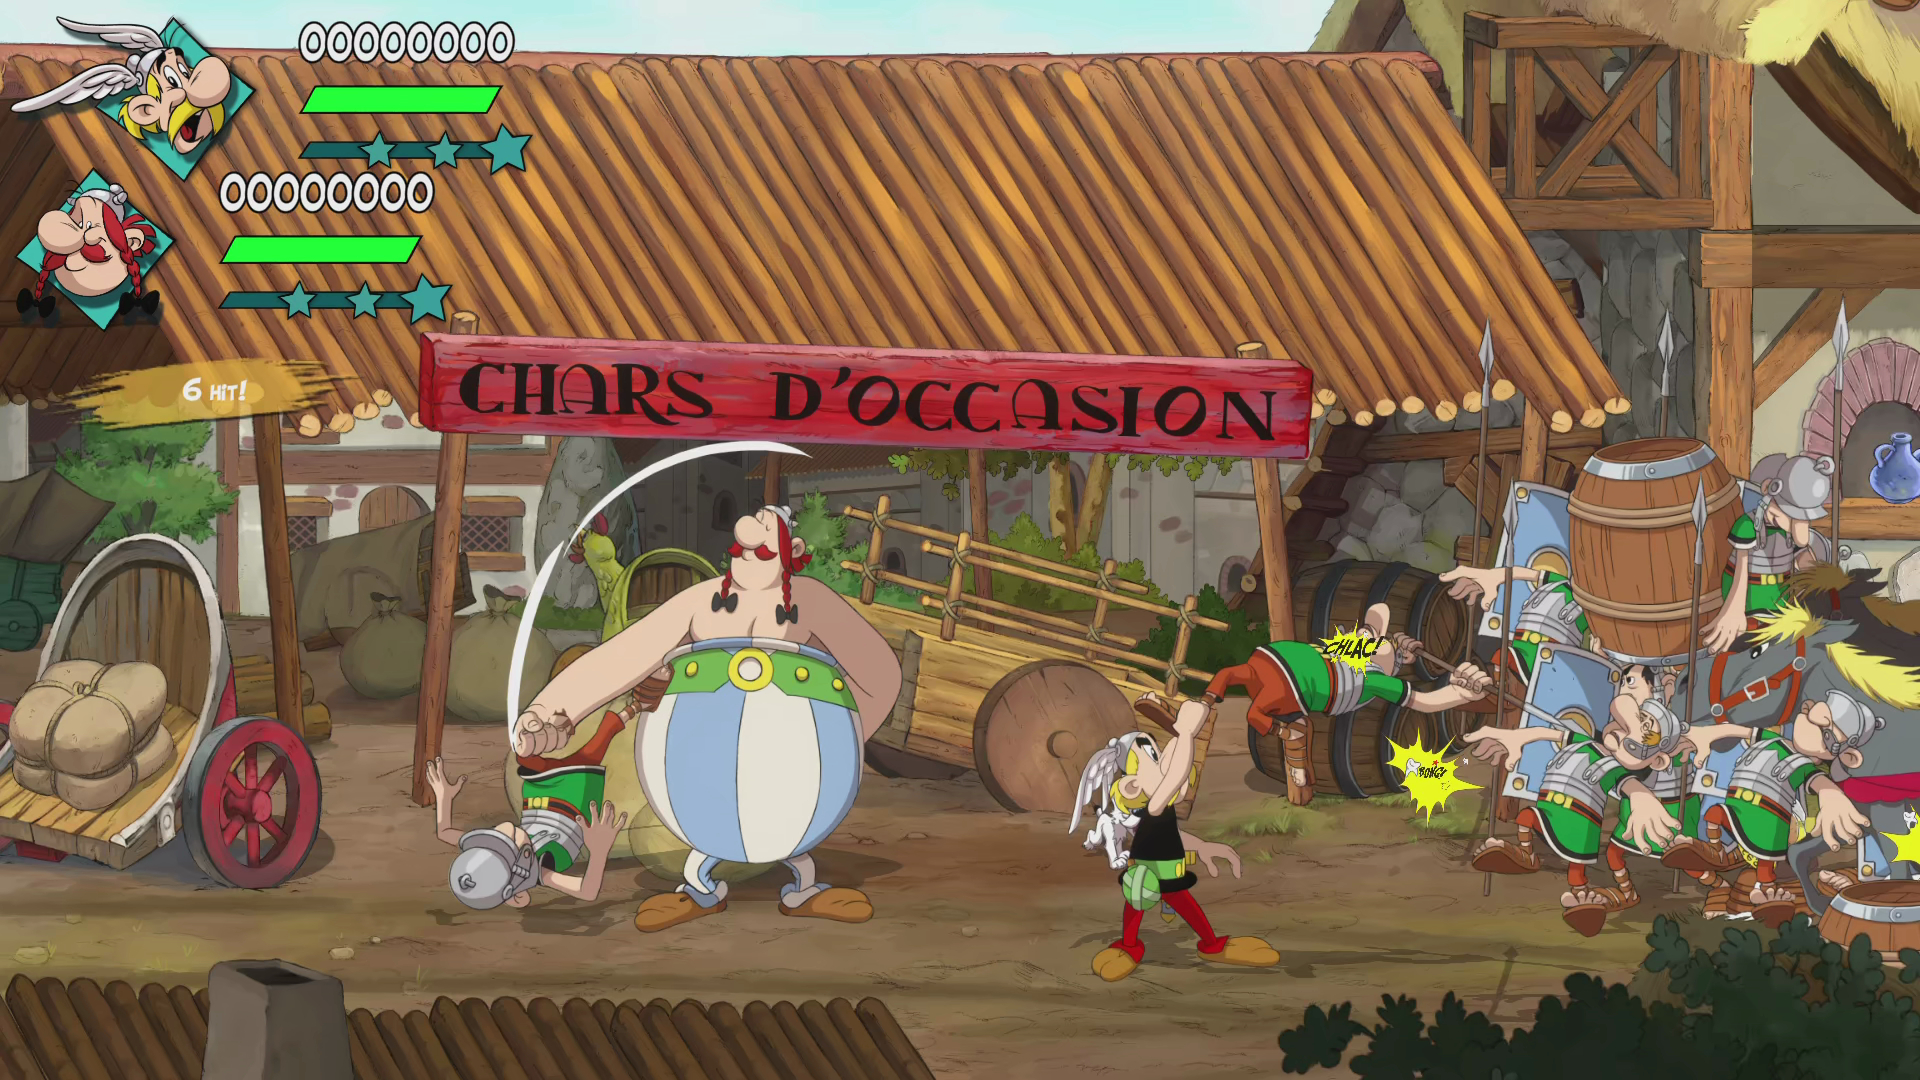 Asterix & Obelix - 2 [PlayStation - them 5] all! Slap